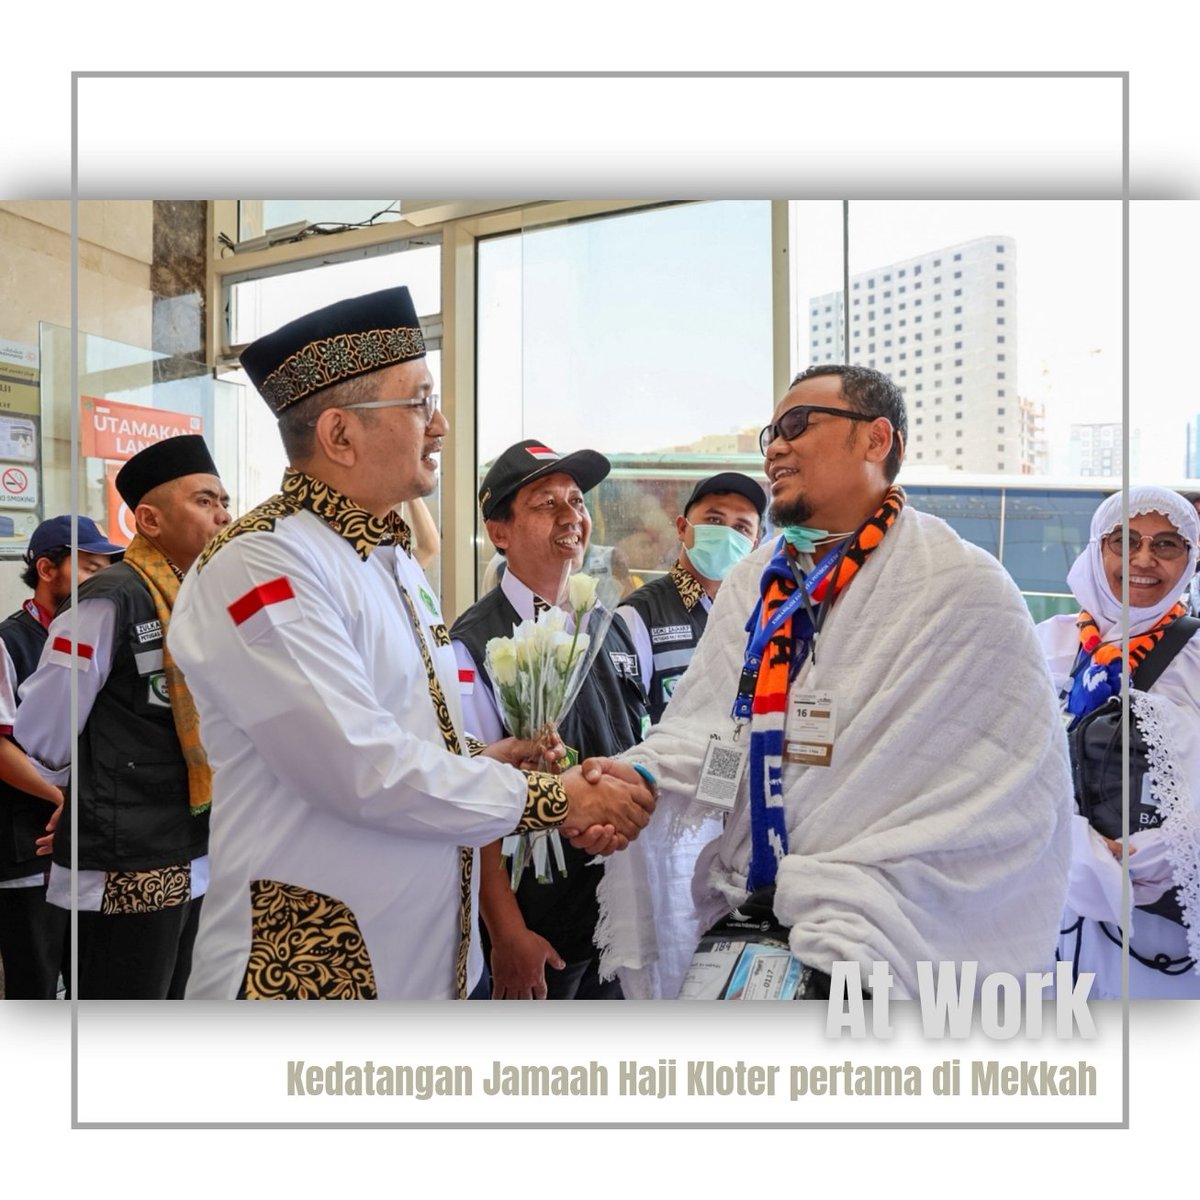 Selamat datang di Mekkah Siang ini sy menyambut kedatangan Kloter pertama Jamaah Calon Haji Indonesia yg tiba di Mekkah setelah sebelumnya mereka melaksanakan Ibadah di Madinah. ------------ #DemiNKRI #NegaraMelindungi #IniDiplomasi #KJRIJeddah #Indonesiauntukdunia #KonjenJeddah